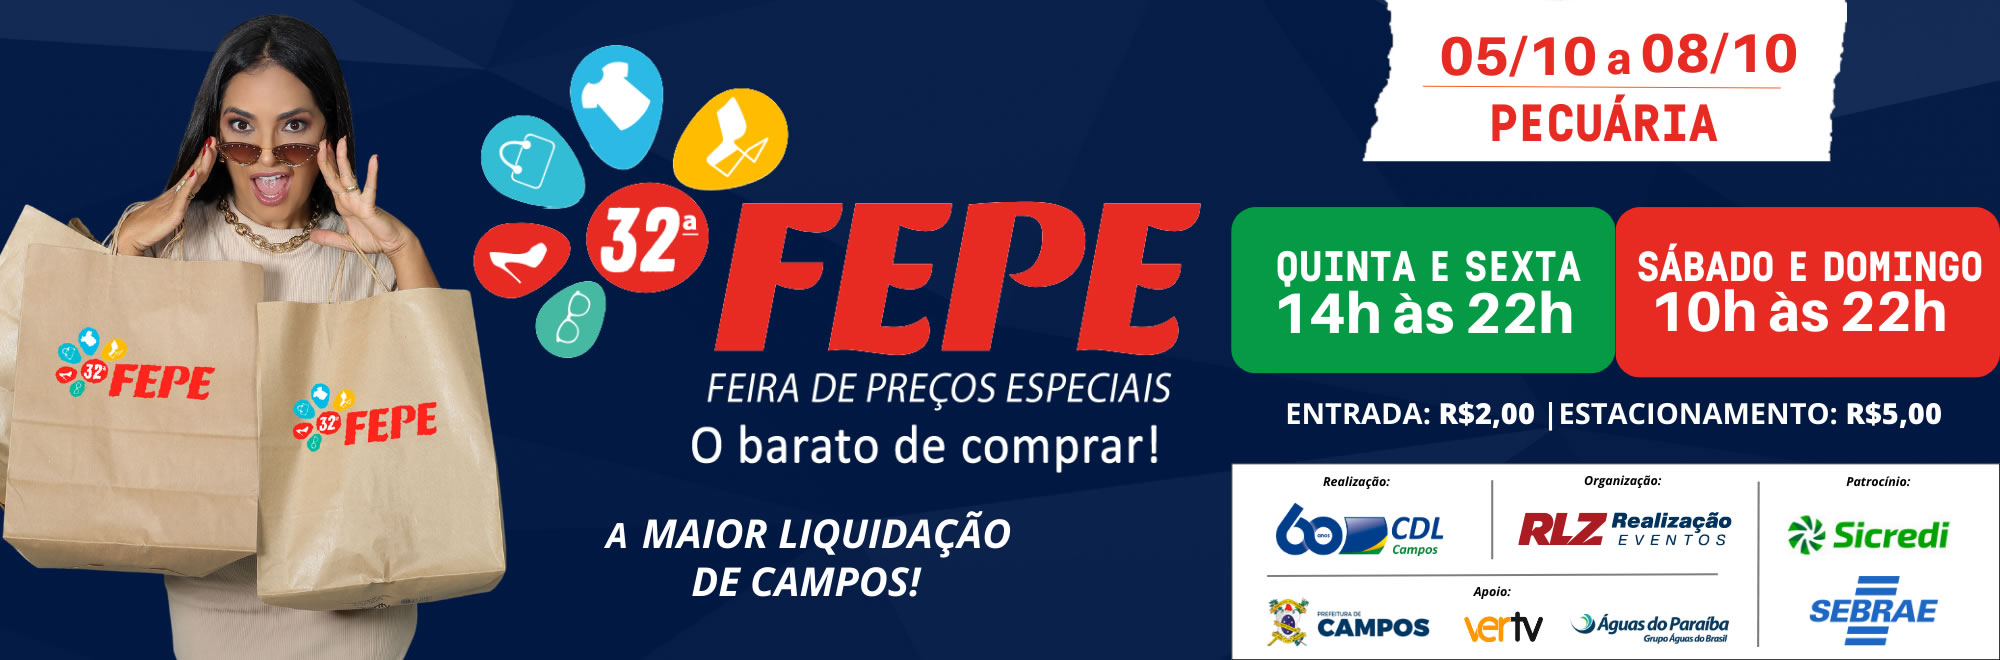 32ª FEPE - Feira de Preços Especiais de Campos - CDL Campos